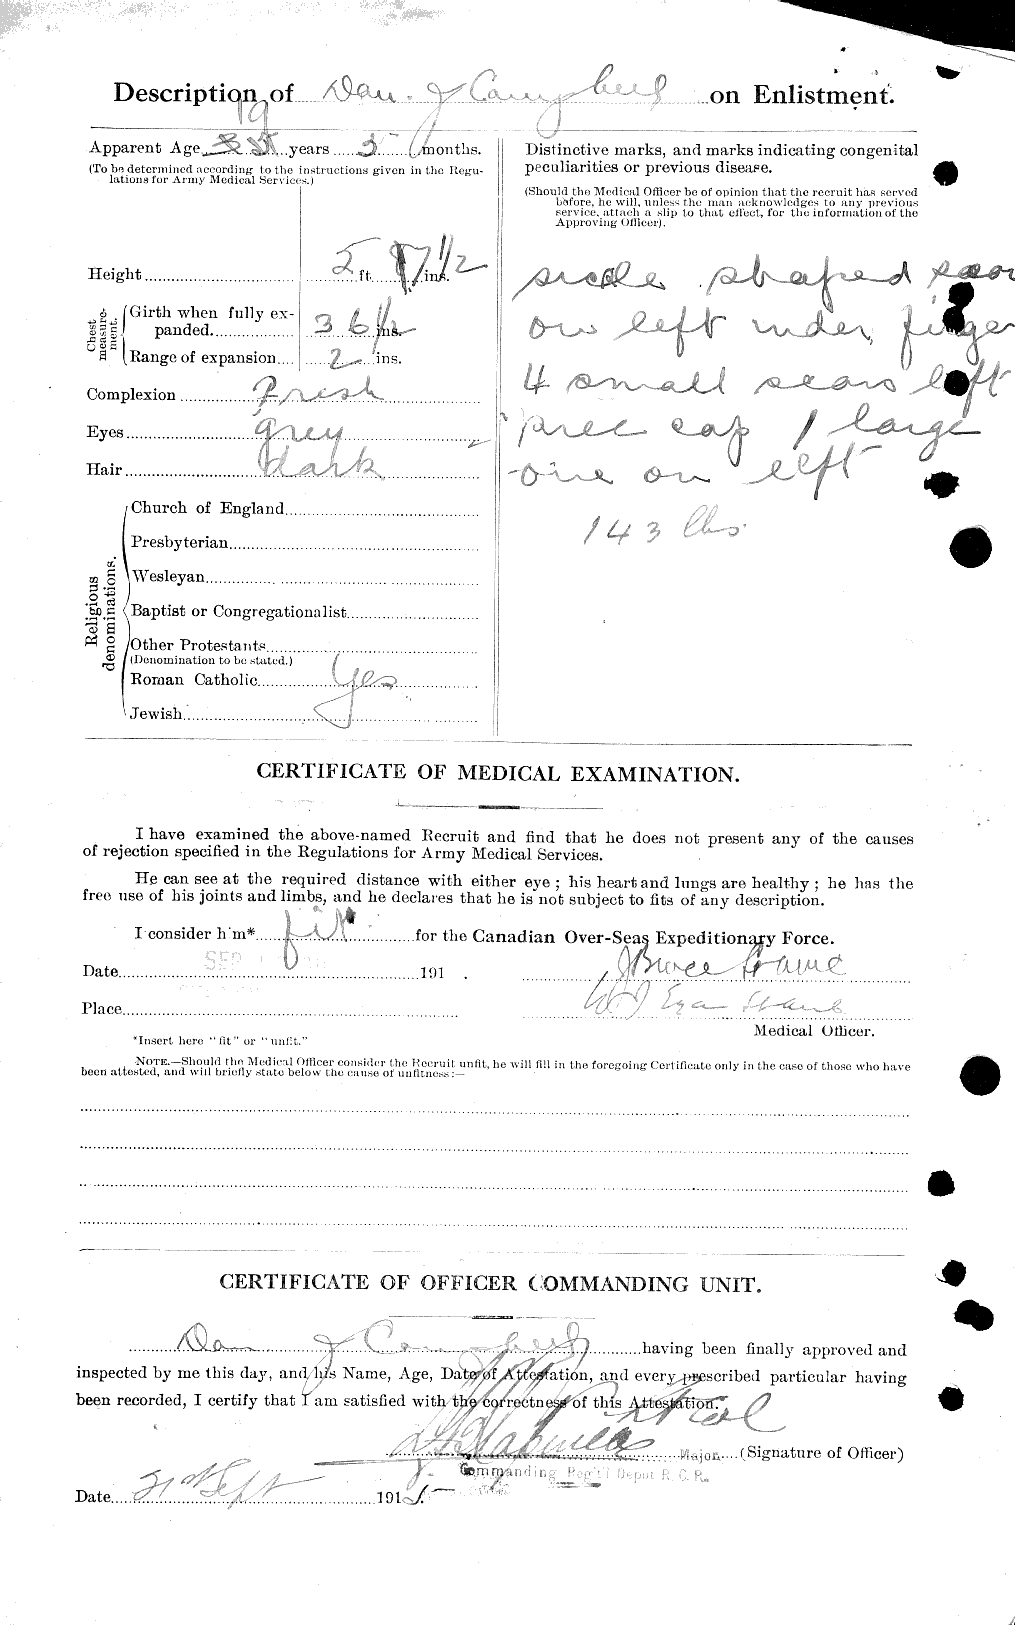 Dossiers du Personnel de la Première Guerre mondiale - CEC 008174b